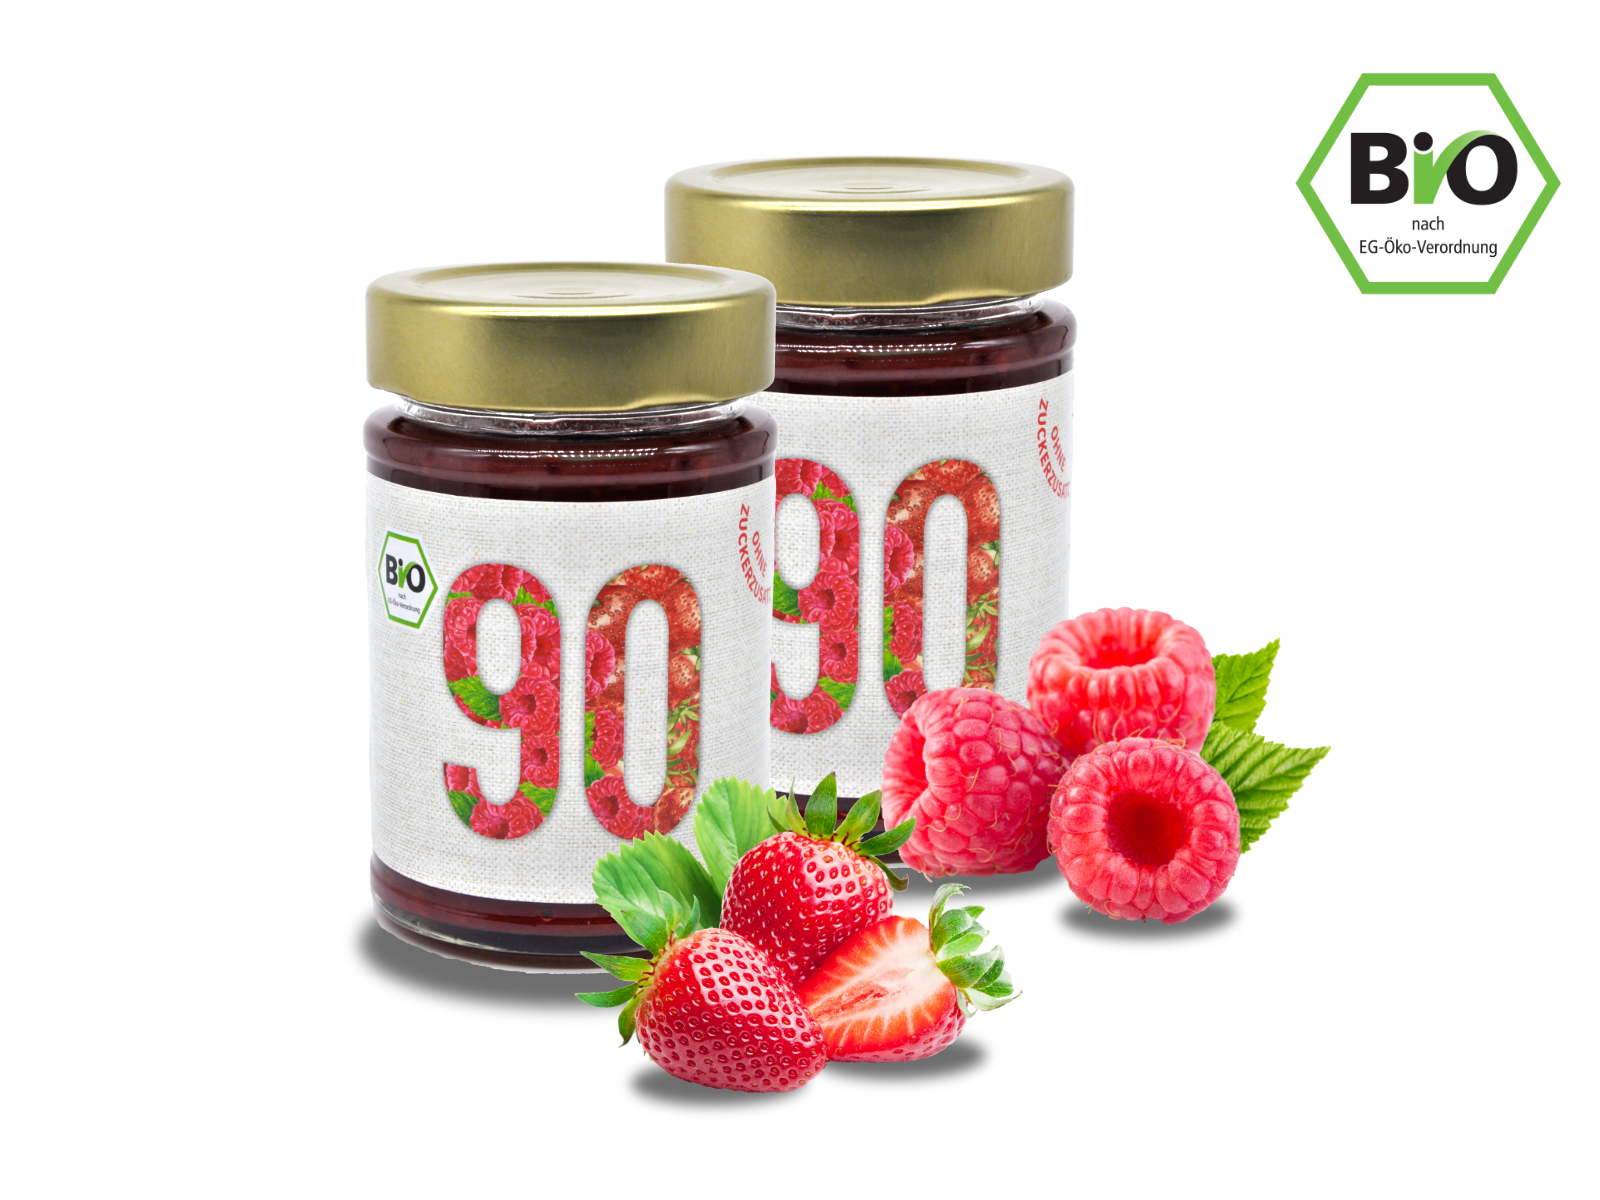 2x Sibani BIO 90% Fruchtaufstrich, Himbeere-Erdbeere , mit Erythrit* gesüßt, 180g